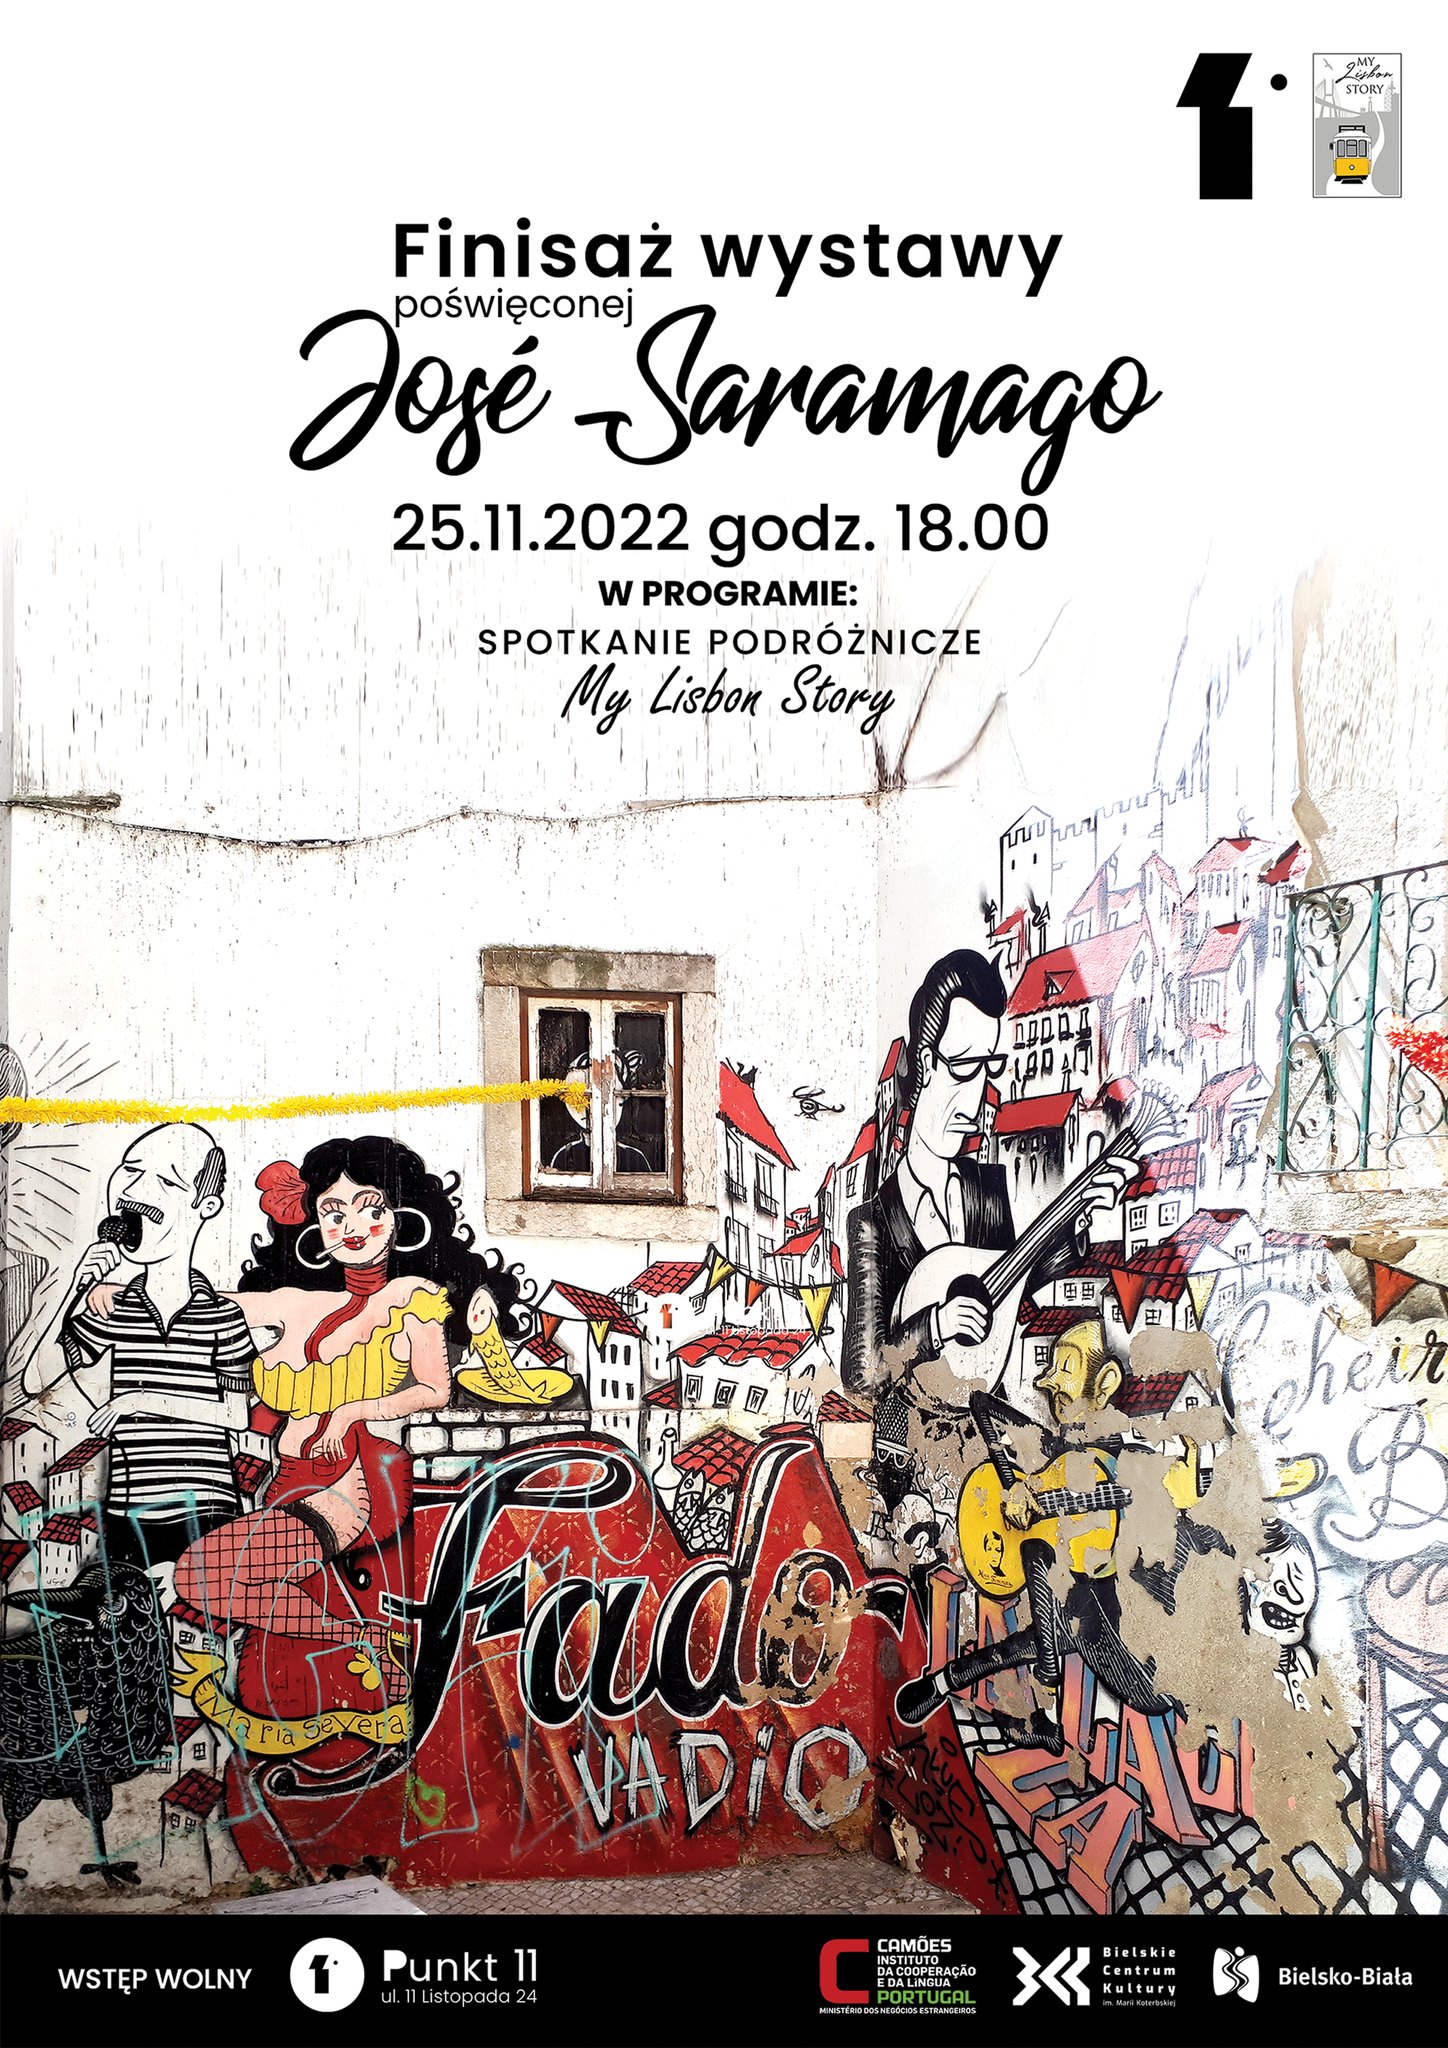  Finisaż wystawy poświęconej José Saramago Na zdjęciu plakat